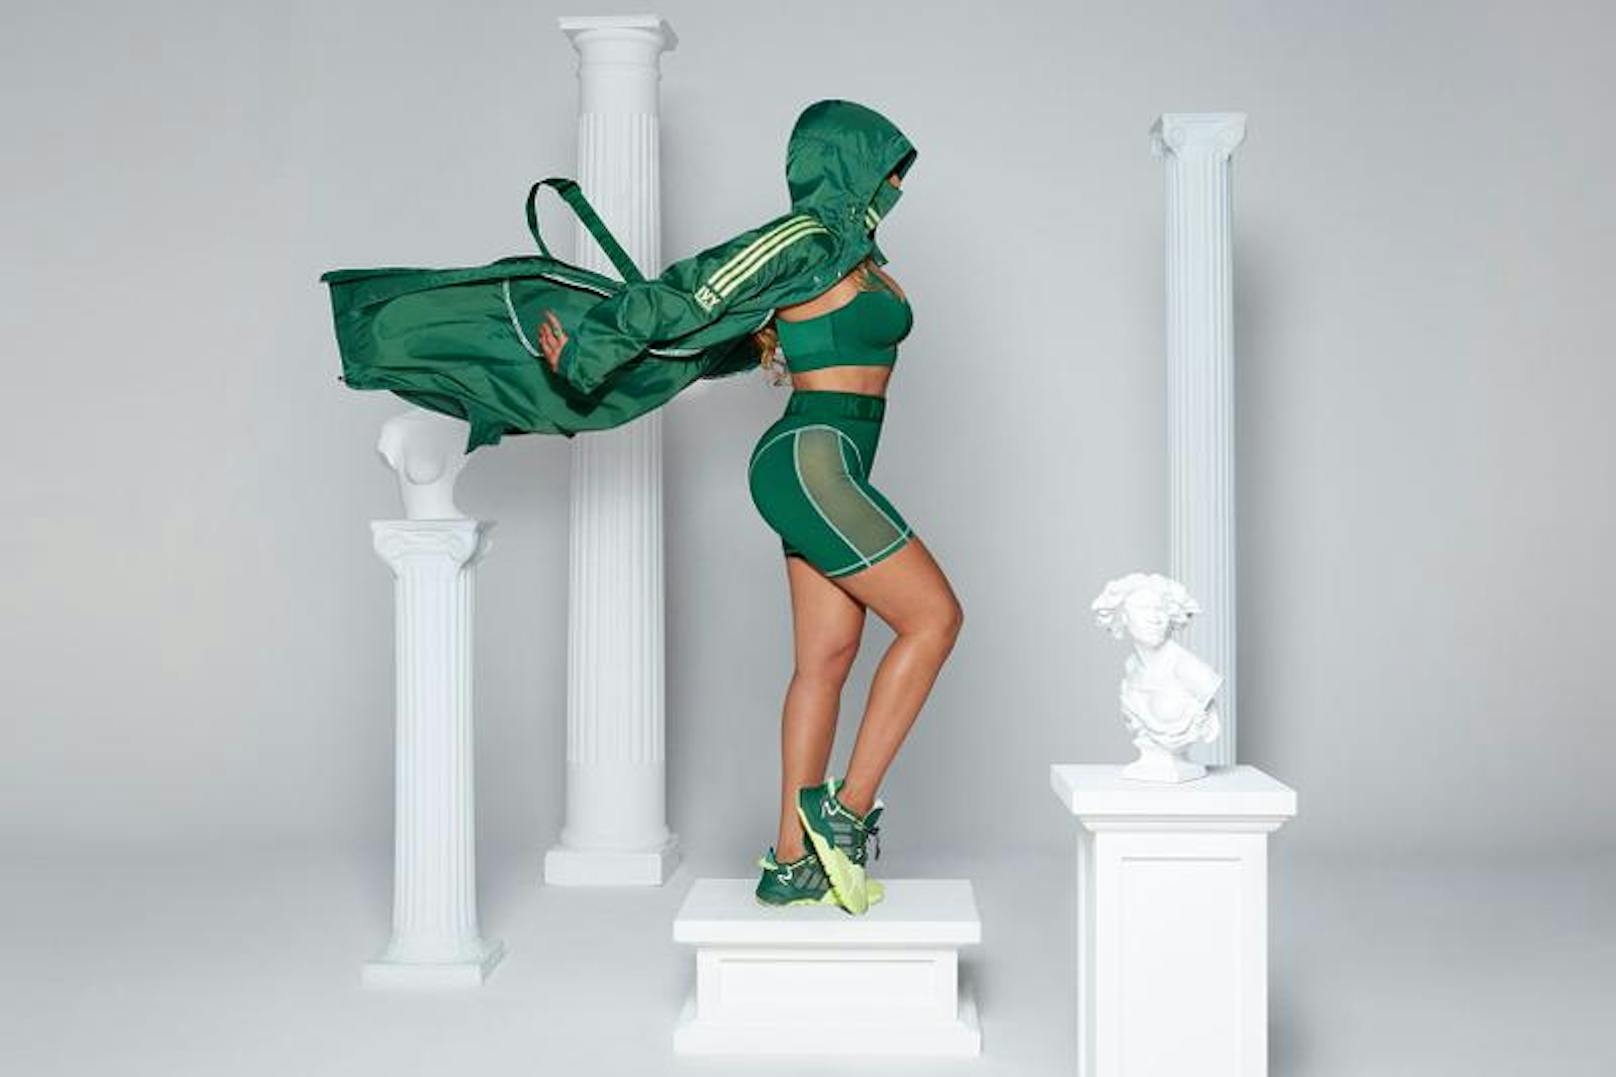 Die neue Adidas-Kollektion von Beyoncé's Modemarke Ivy Park ist draußen - und zum Teil schon ausverkauft.